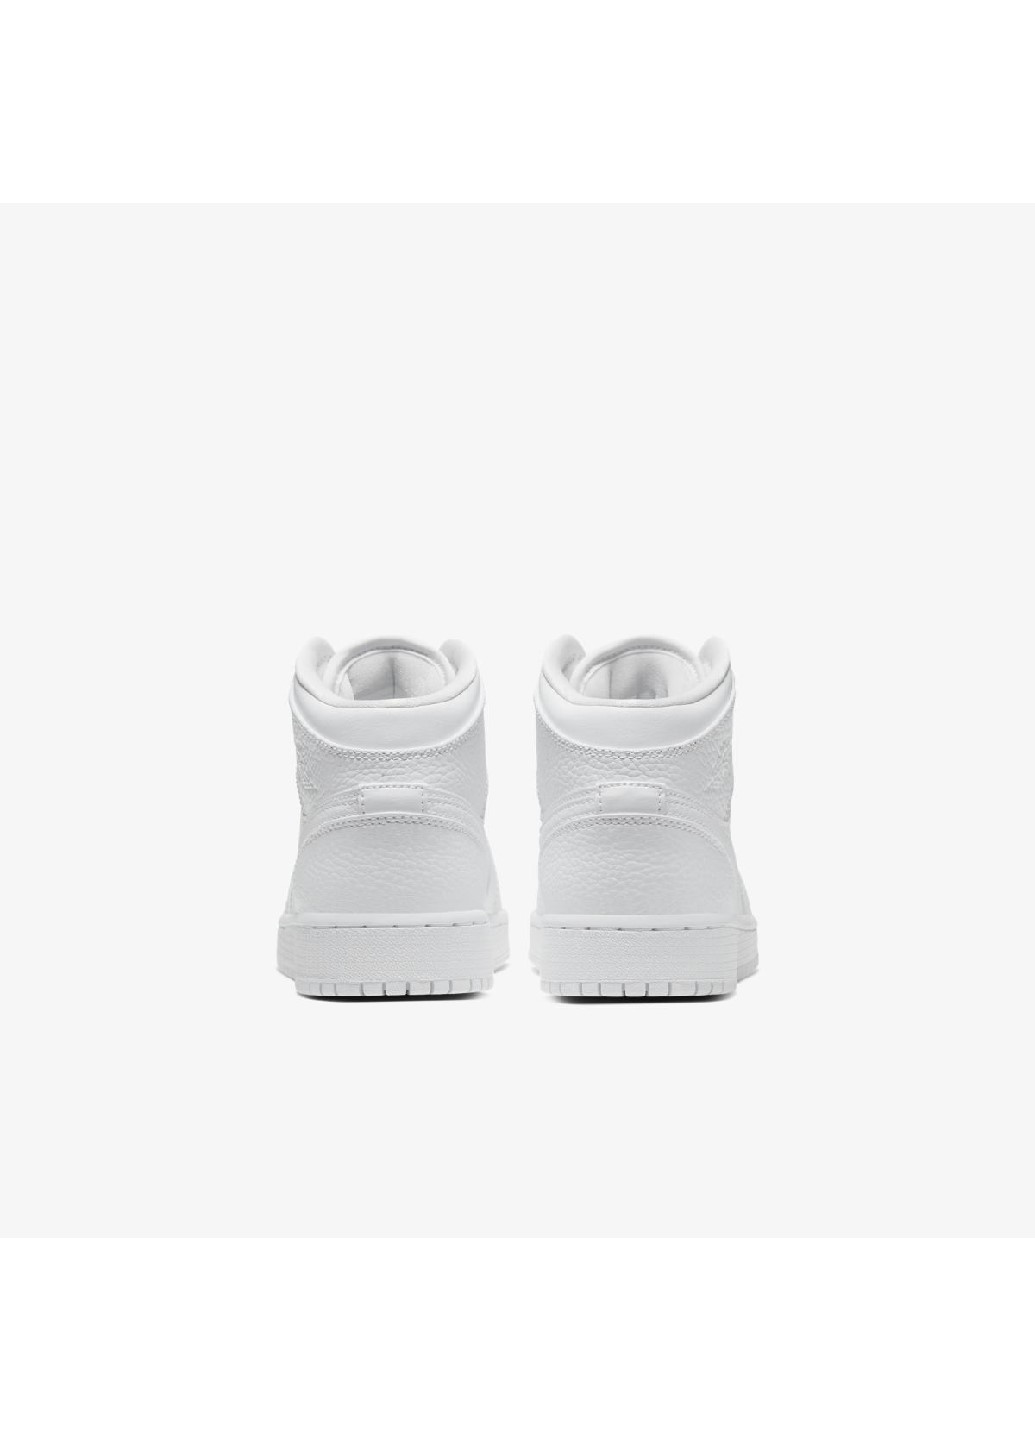 Белые демисезонные кроссовки 554725-130_2024 Jordan 1 MID